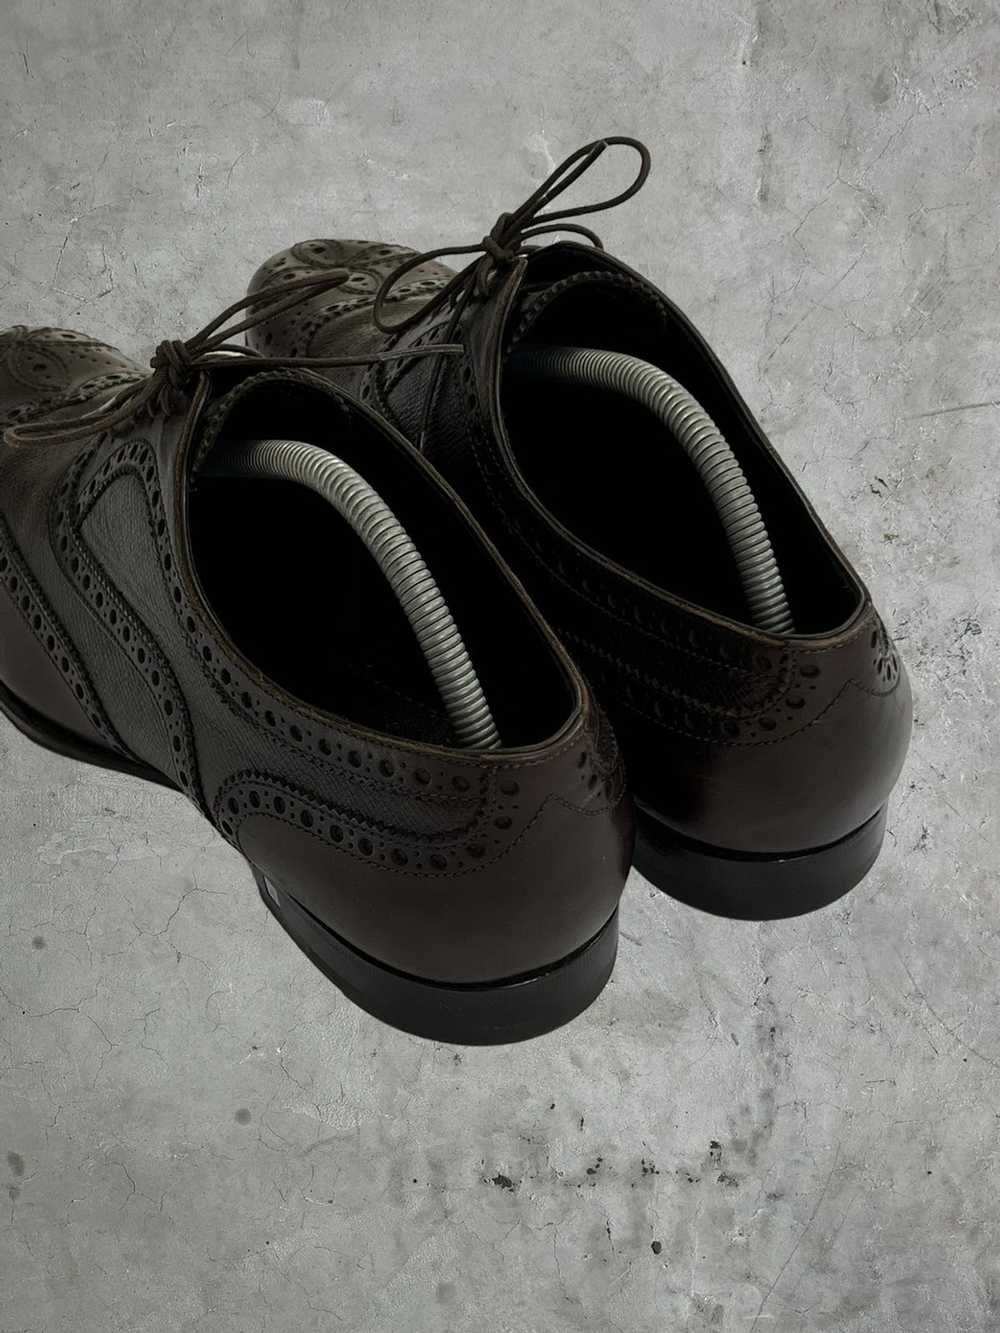 Louis Vuitton Louis Vuitton Detailed Leather Shoes - image 6